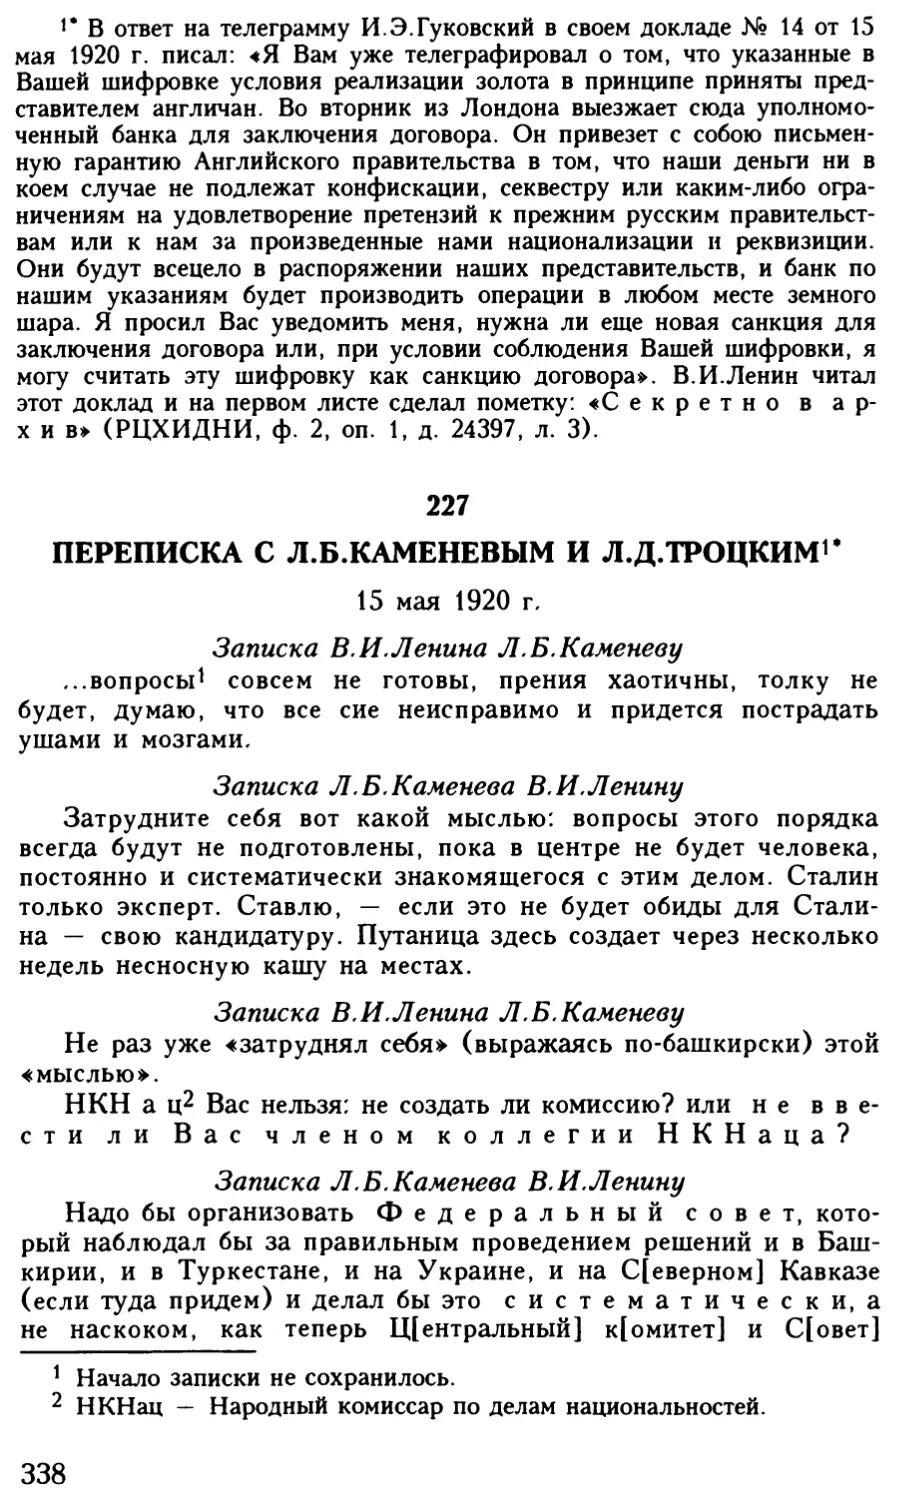 227. Переписка с Л.Б.Каменевым и Л.Д.Троцким. 15 мая 1920 г